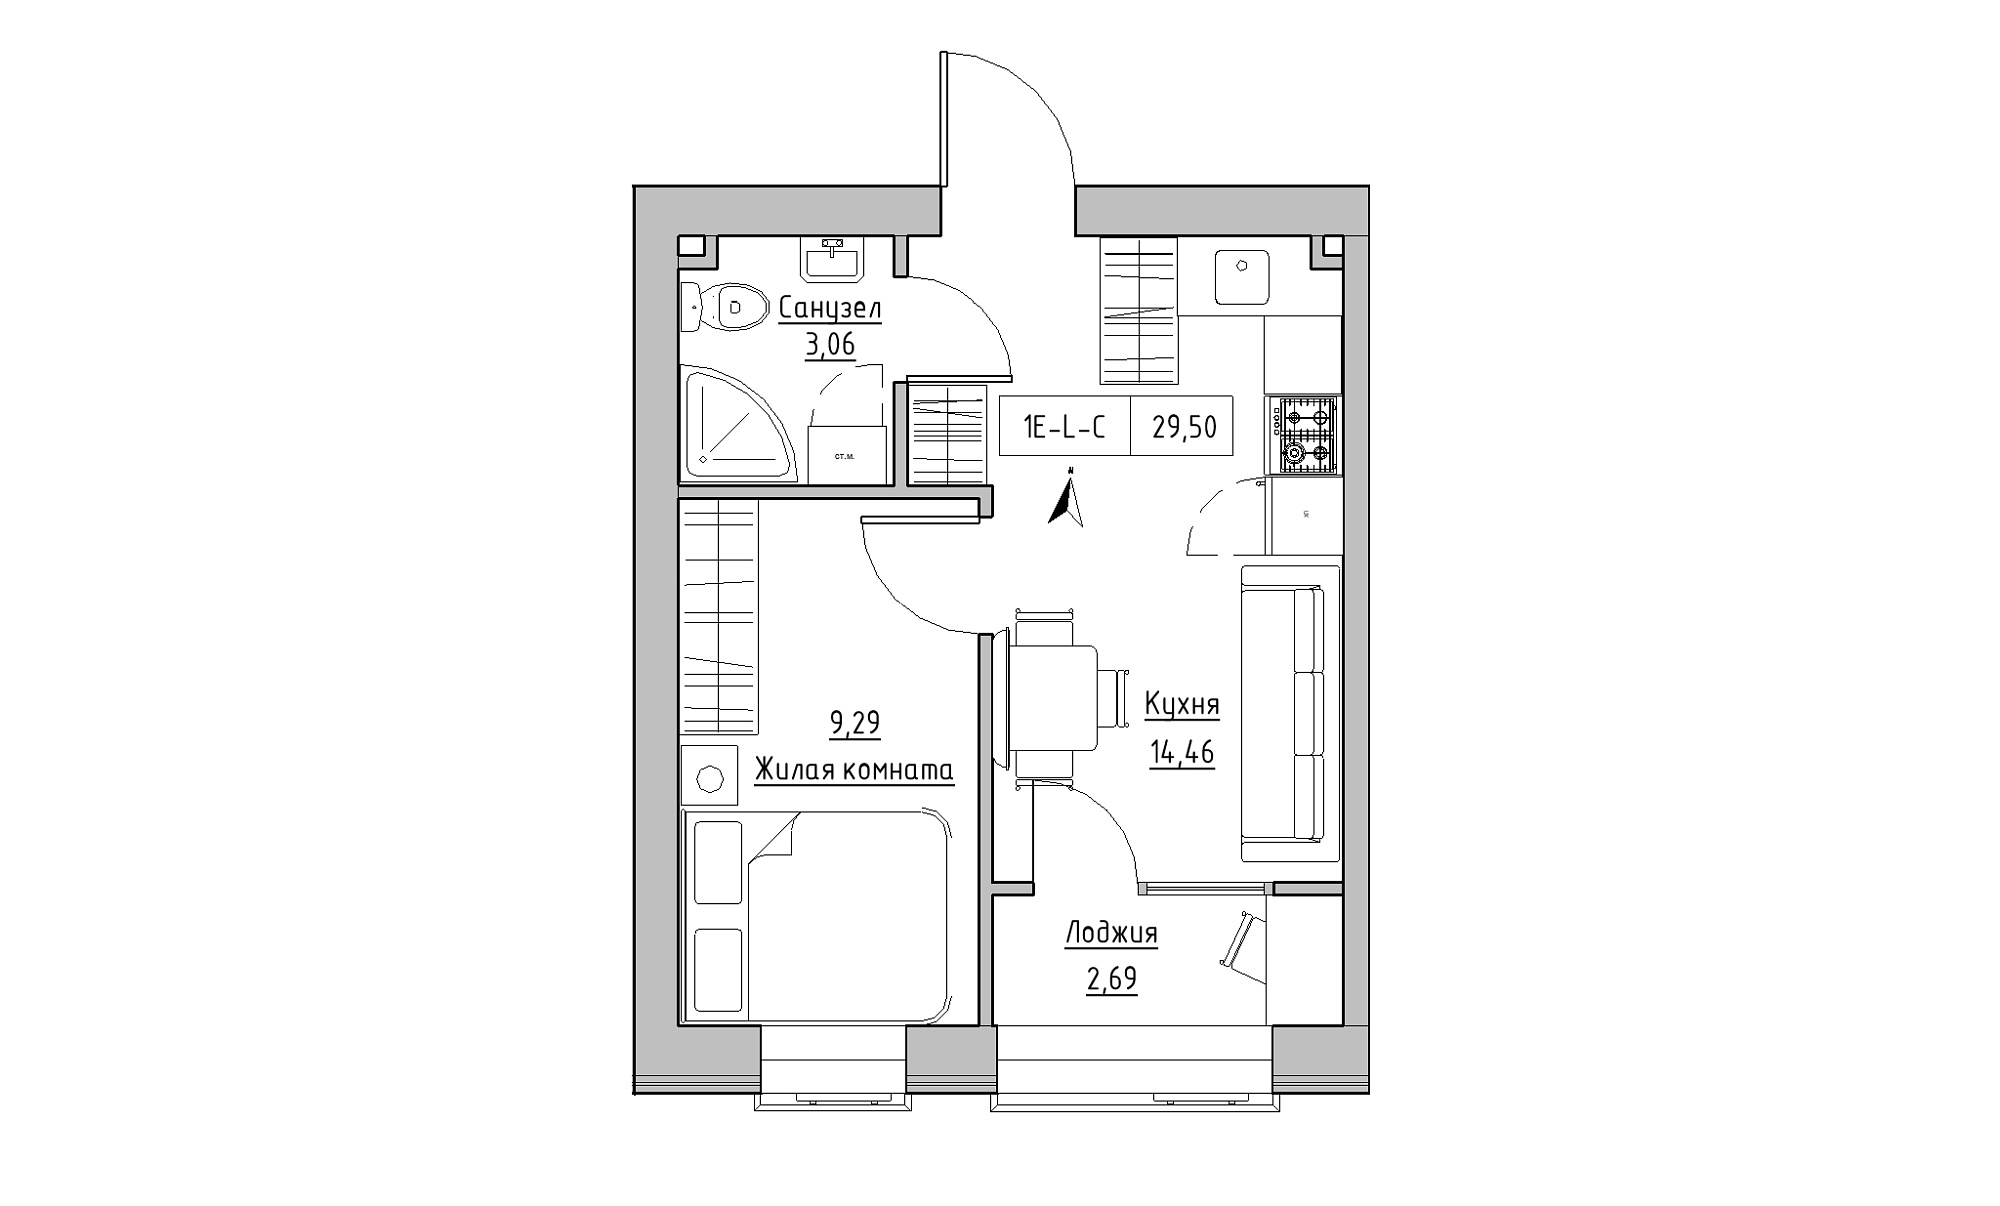 Планування 1-к квартира площею 29.5м2, KS-023-04/0011.